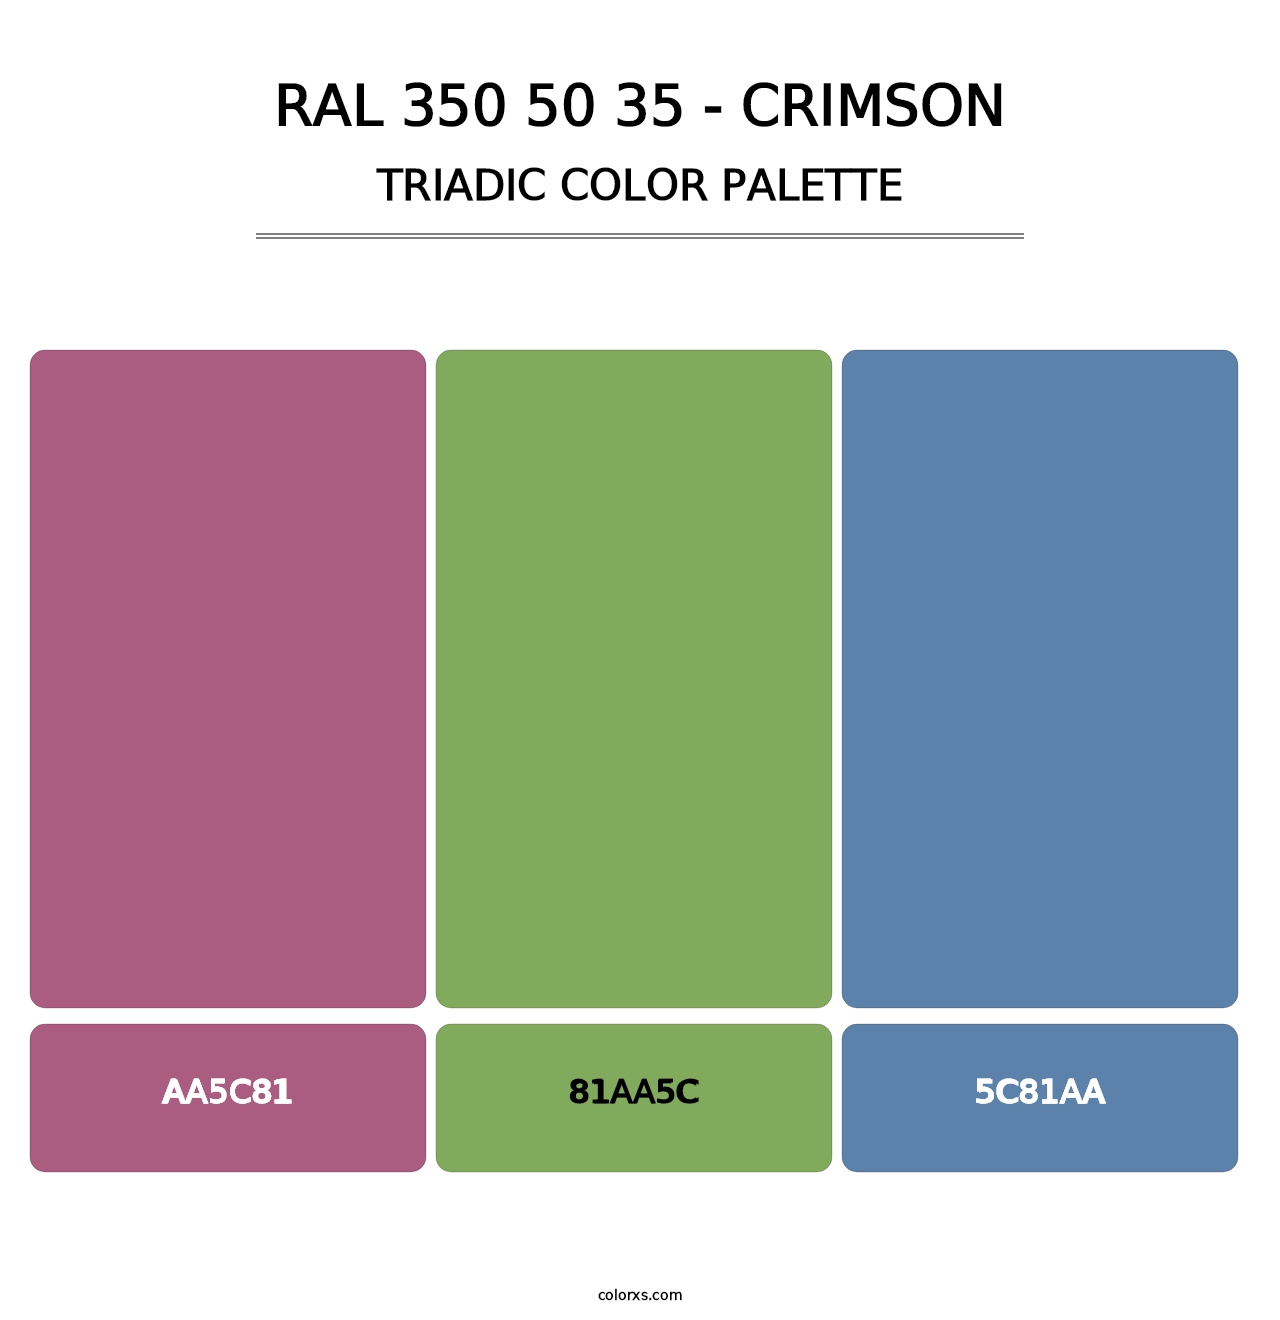 RAL 350 50 35 - Crimson - Triadic Color Palette